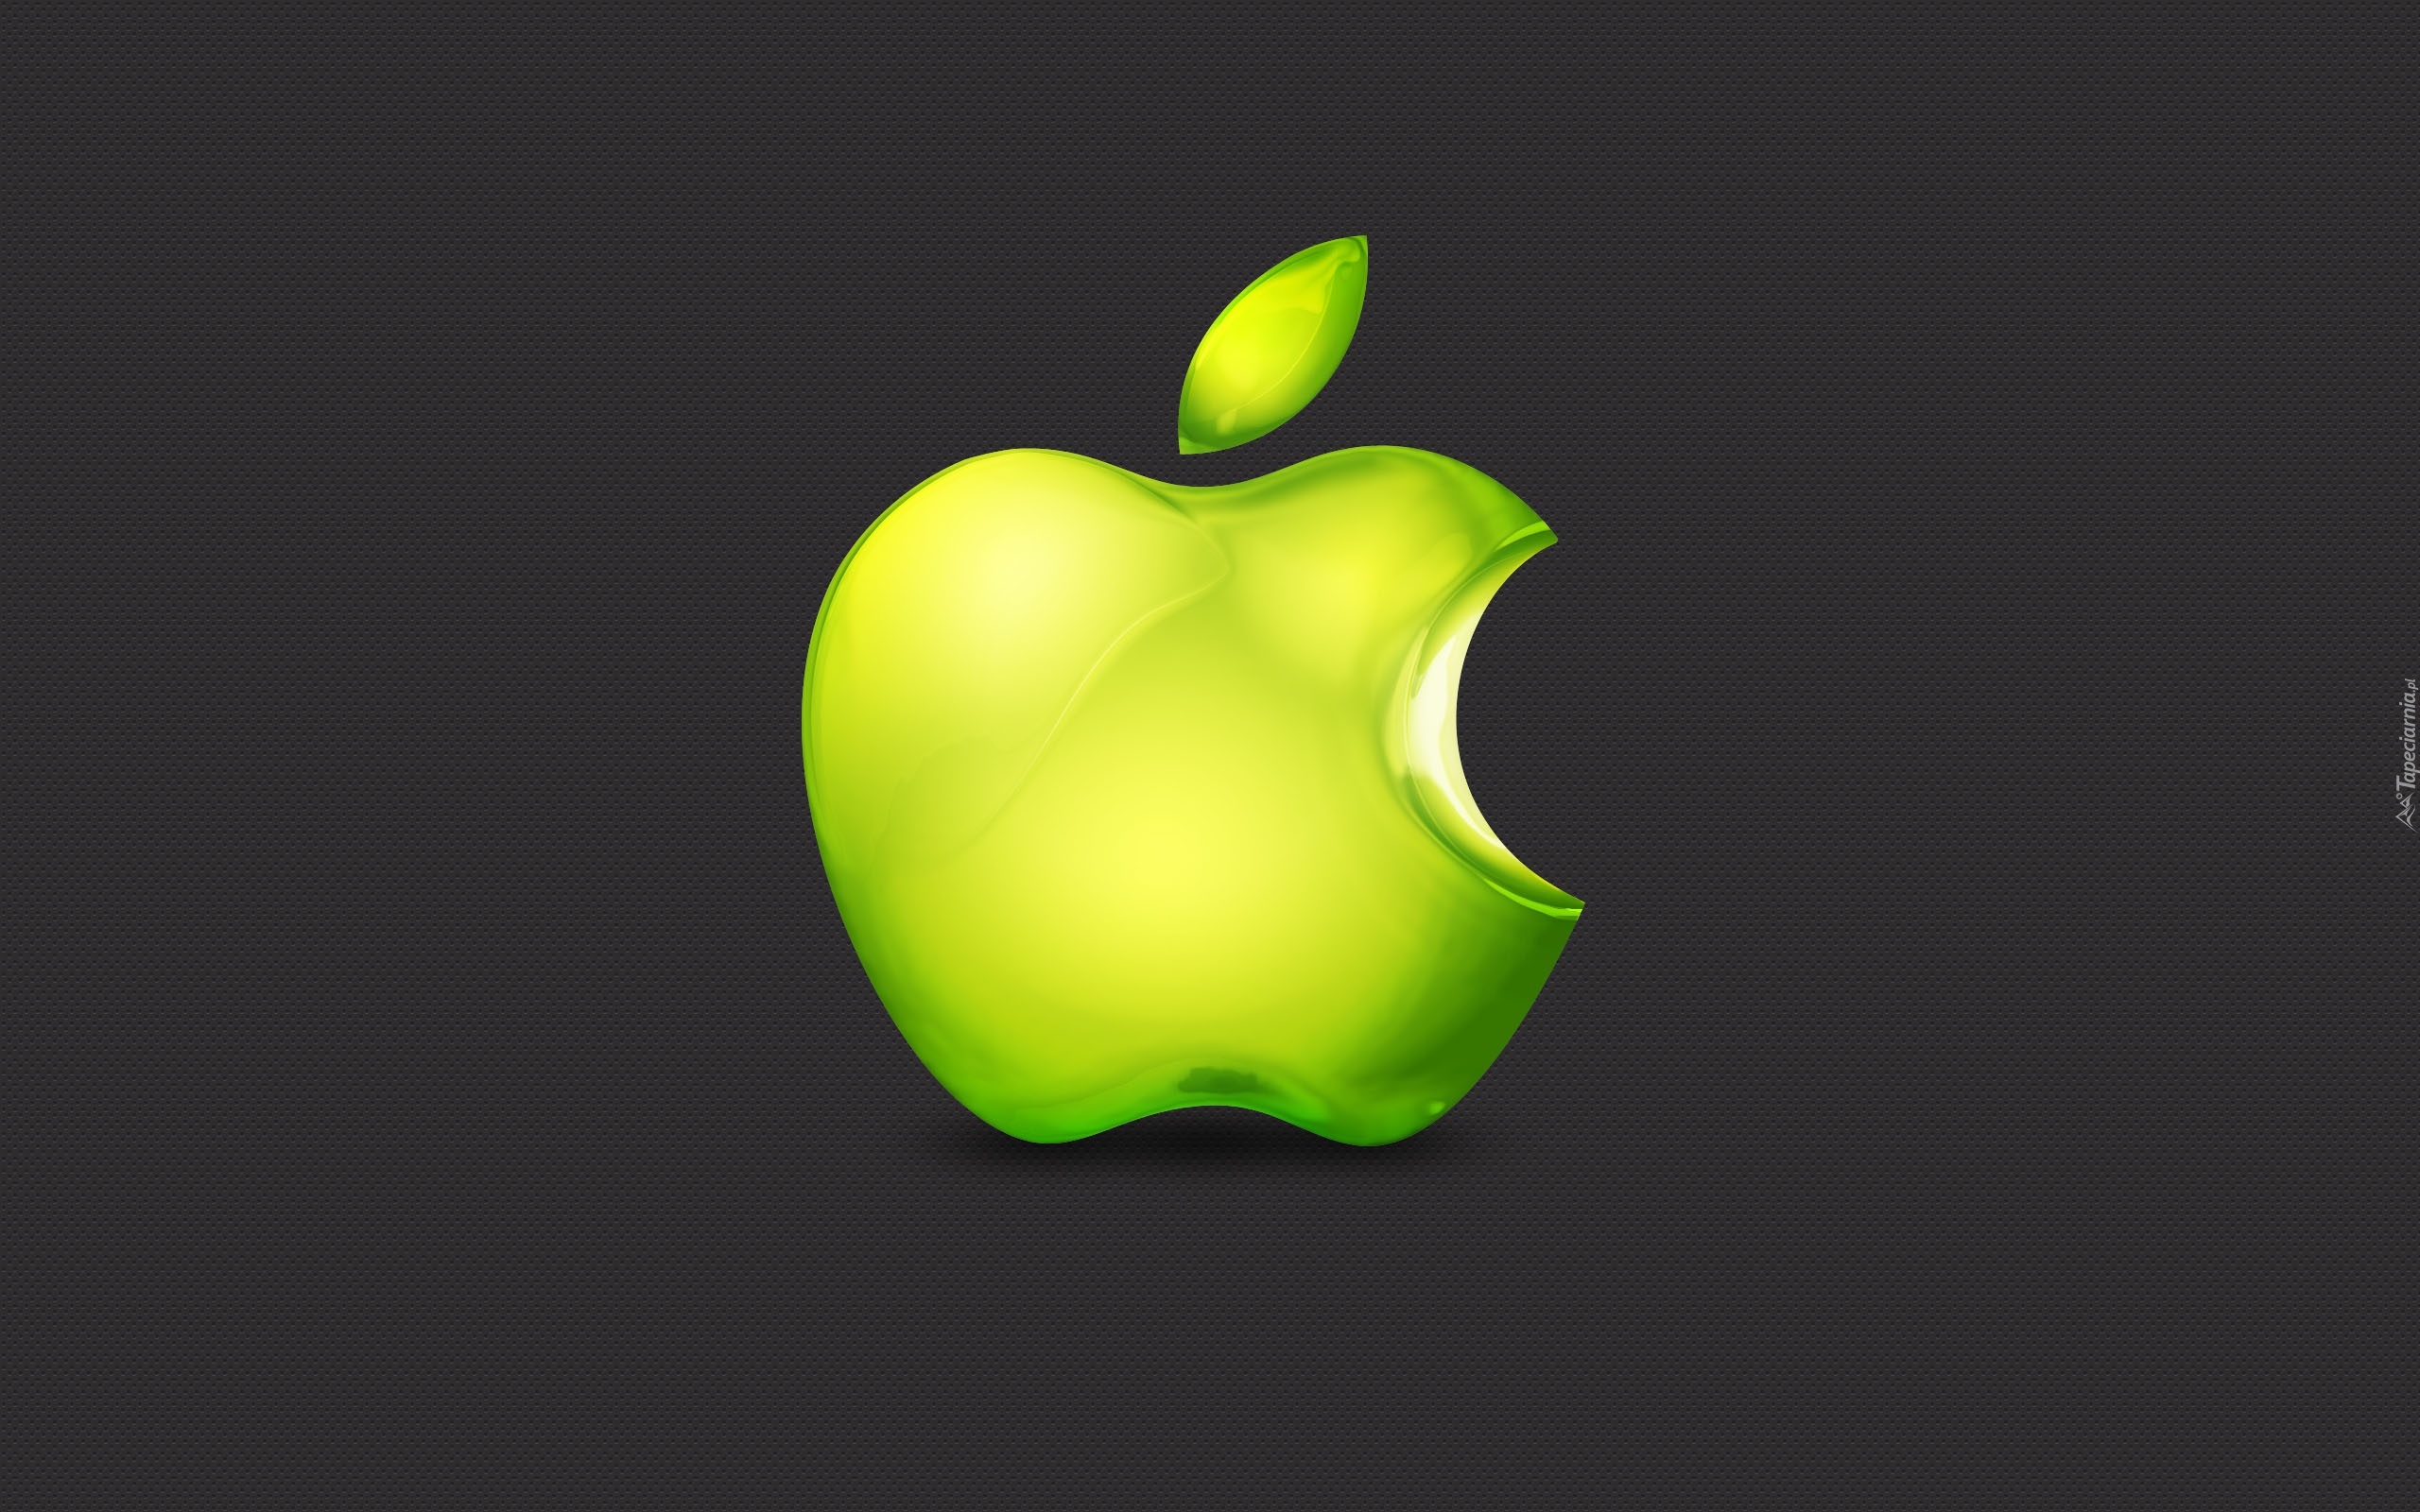 Обои на айфон яблоко. Яблоко. Яблоко Apple. Яблоко айфон. Логотип эпл.